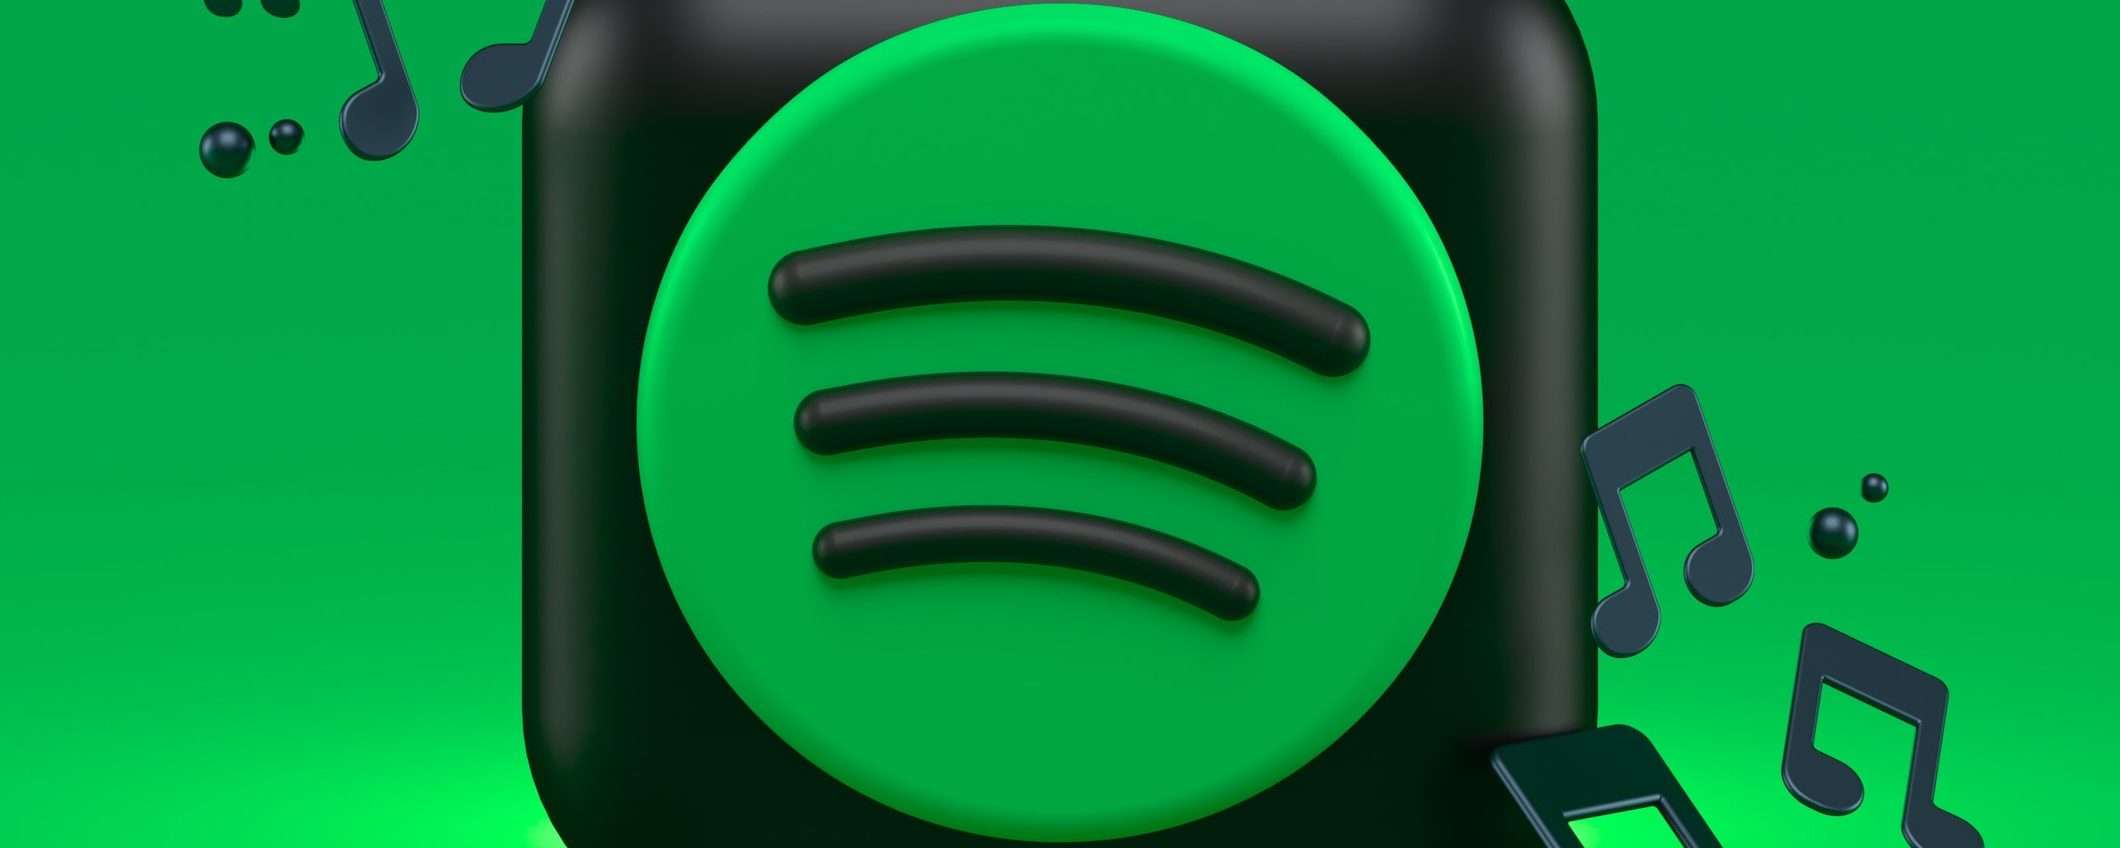 Spotify Hi-Fi rimandato a data da destinarsi